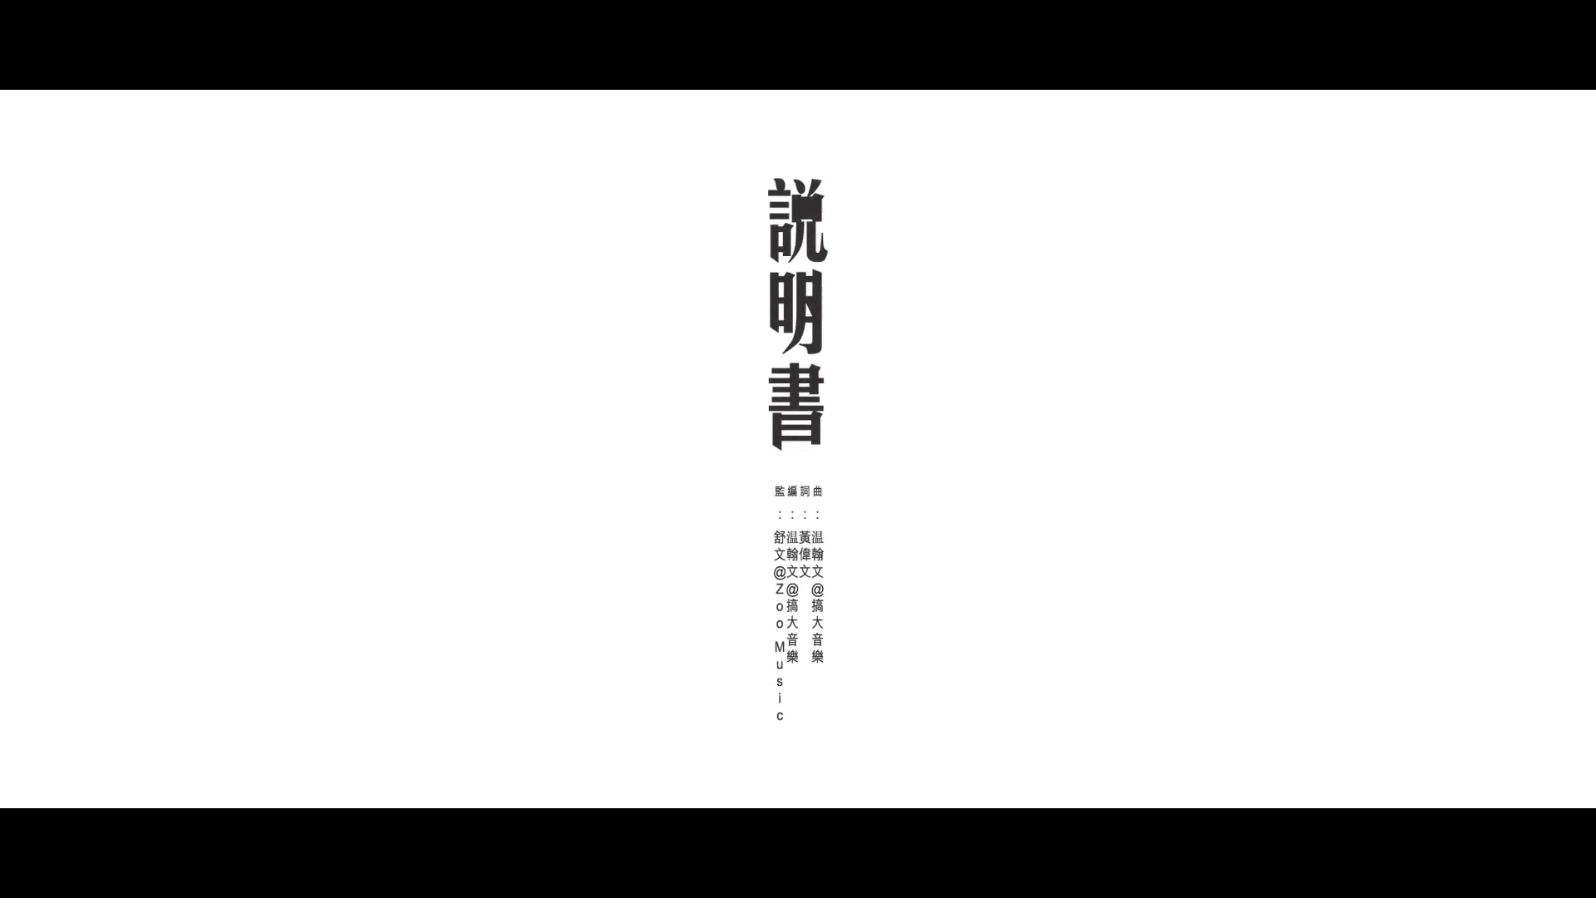 刘浩龙 - 说明书 - 1080P